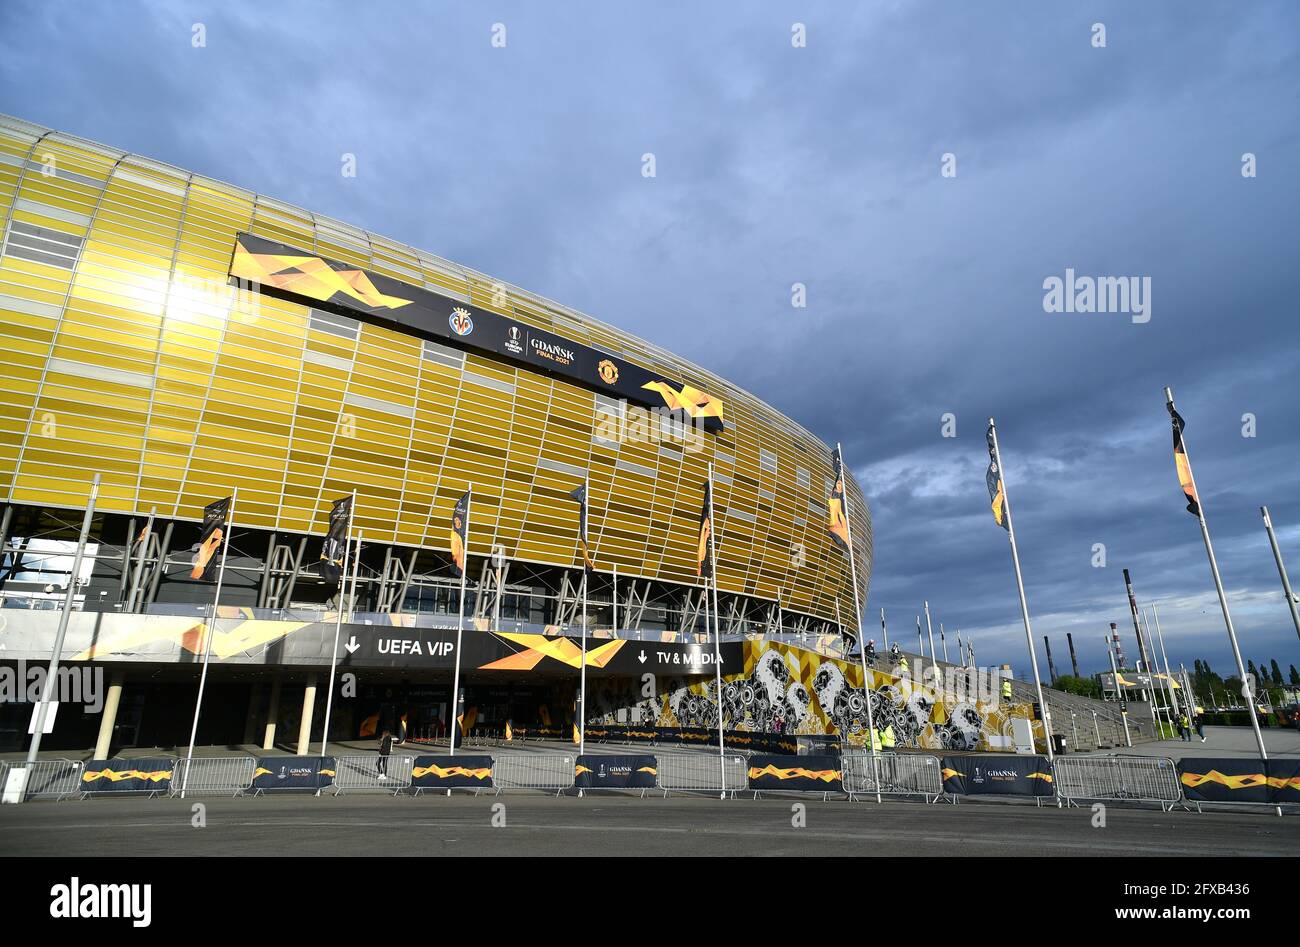 Eine allgemeine Ansicht des Danziger Stadions, Polen. Bilddatum: Mittwoch, 26. Mai 2021. Stockfoto